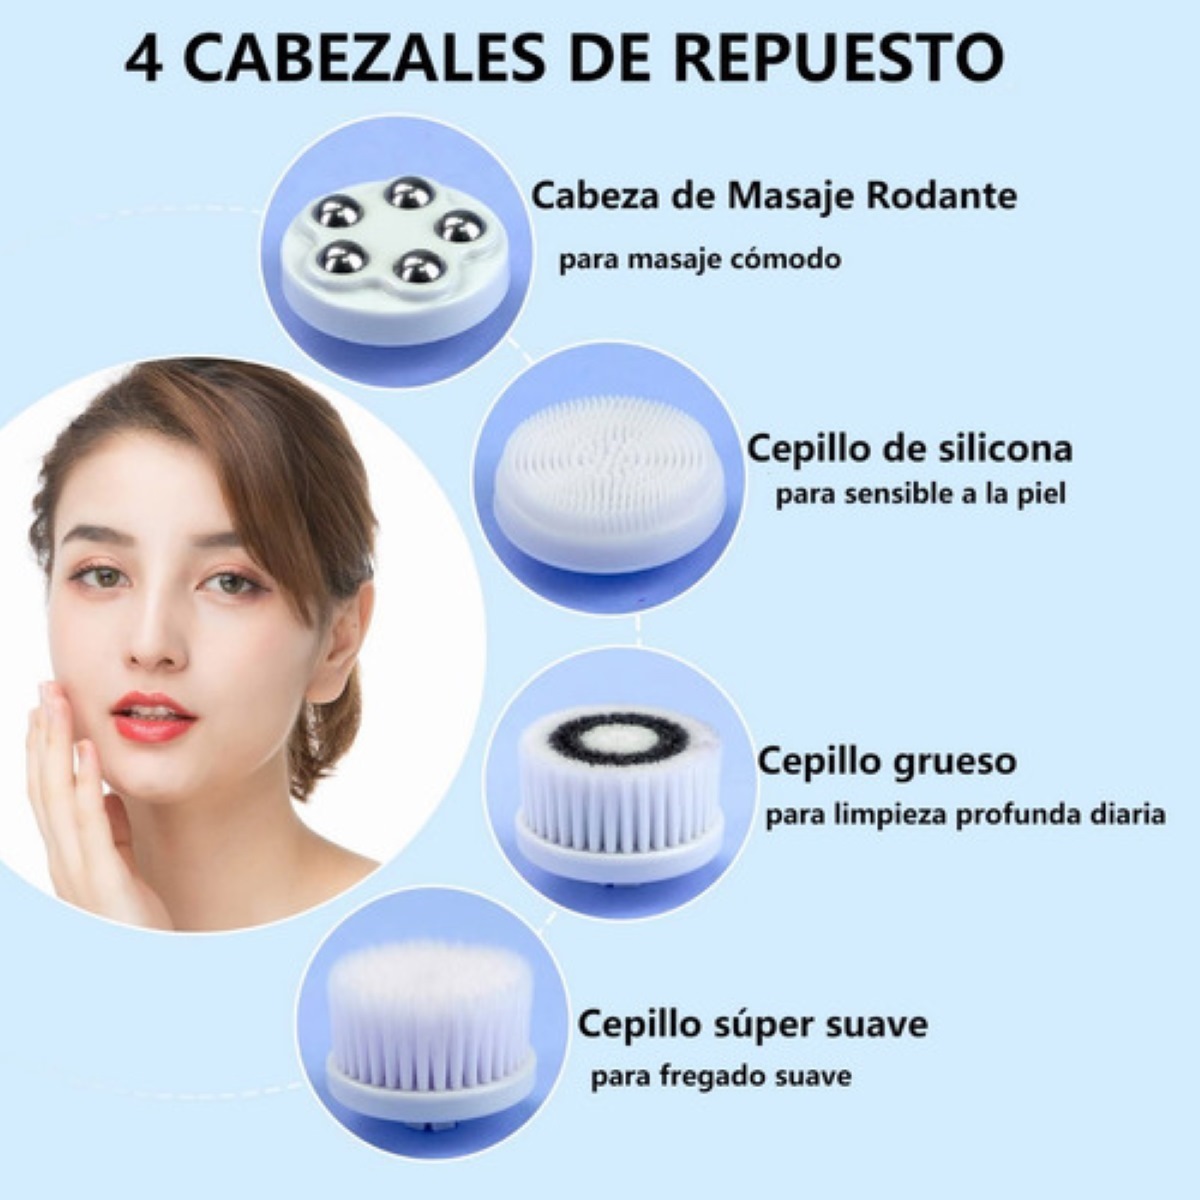 Cepillo de limpieza facial eléctrico exfoliante facial con 3 cabezales  limpiadores y 2 velocidades ajustables para limpieza profunda, eliminación  de